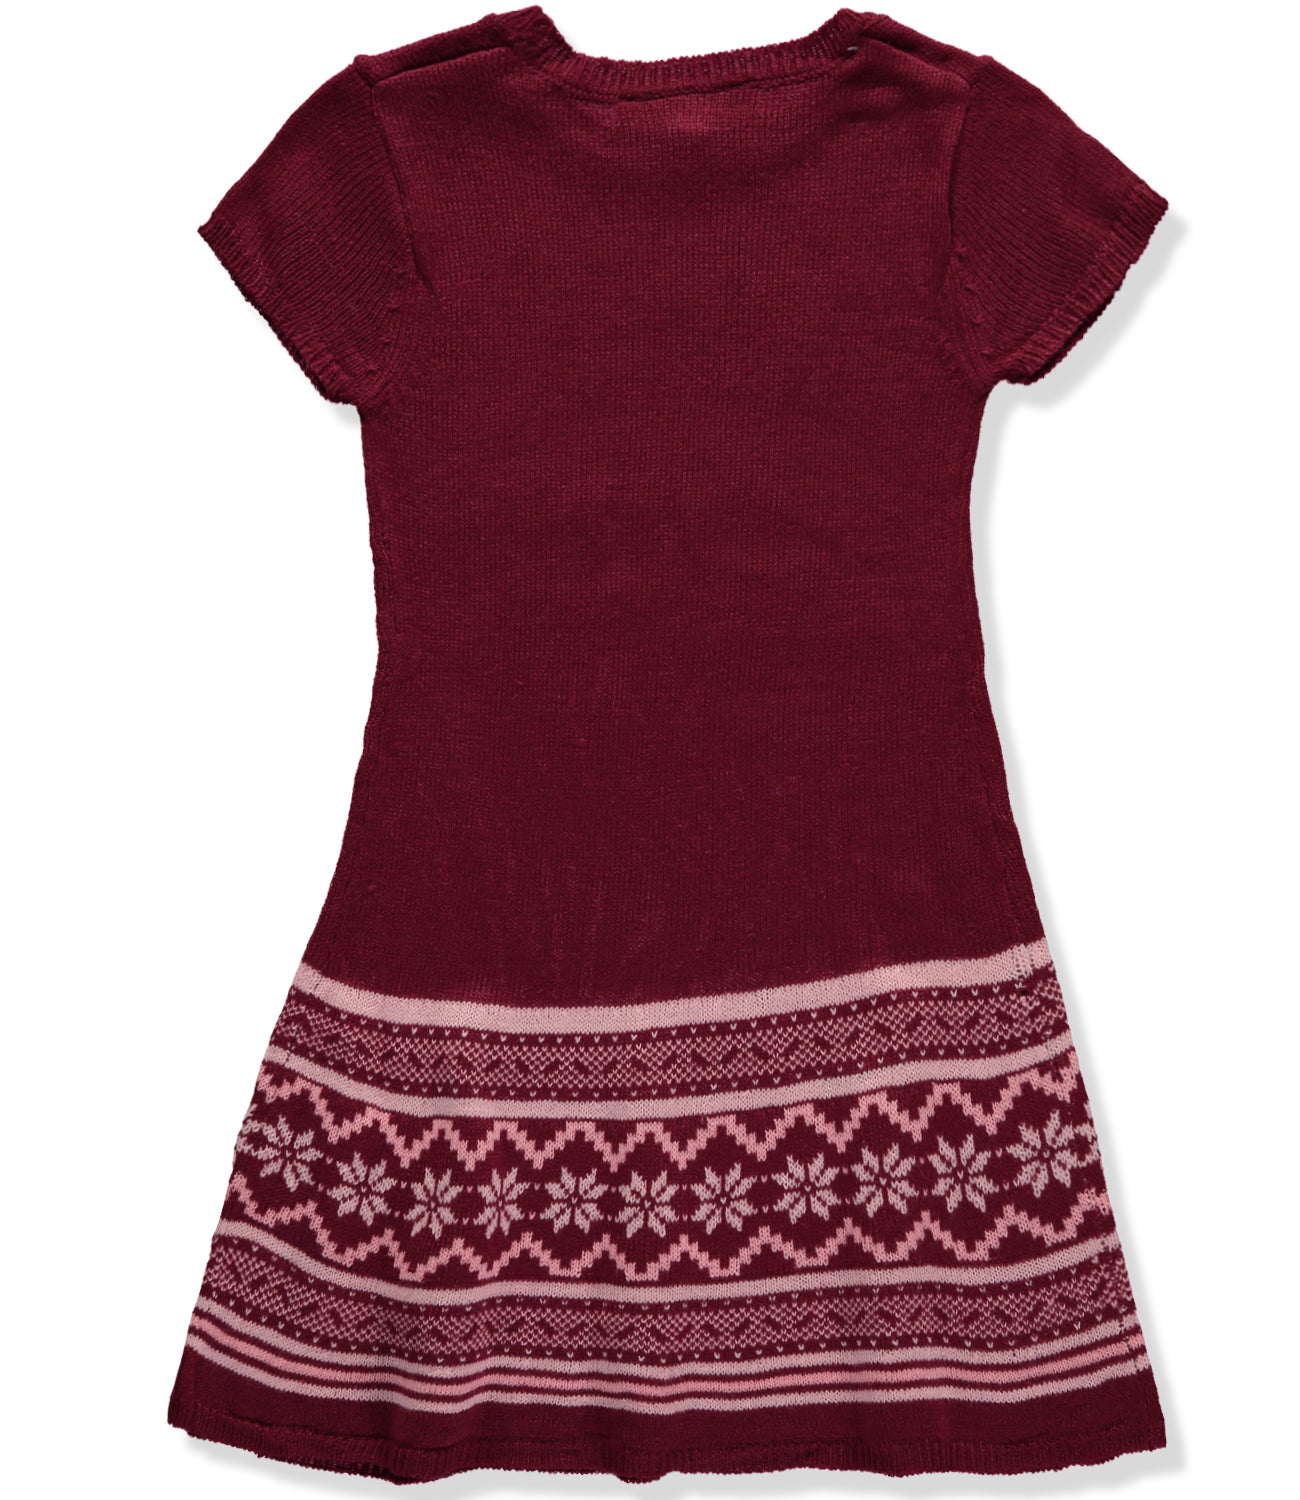 Derek Heart Girls 7-16 Jacquard Sweater Dress